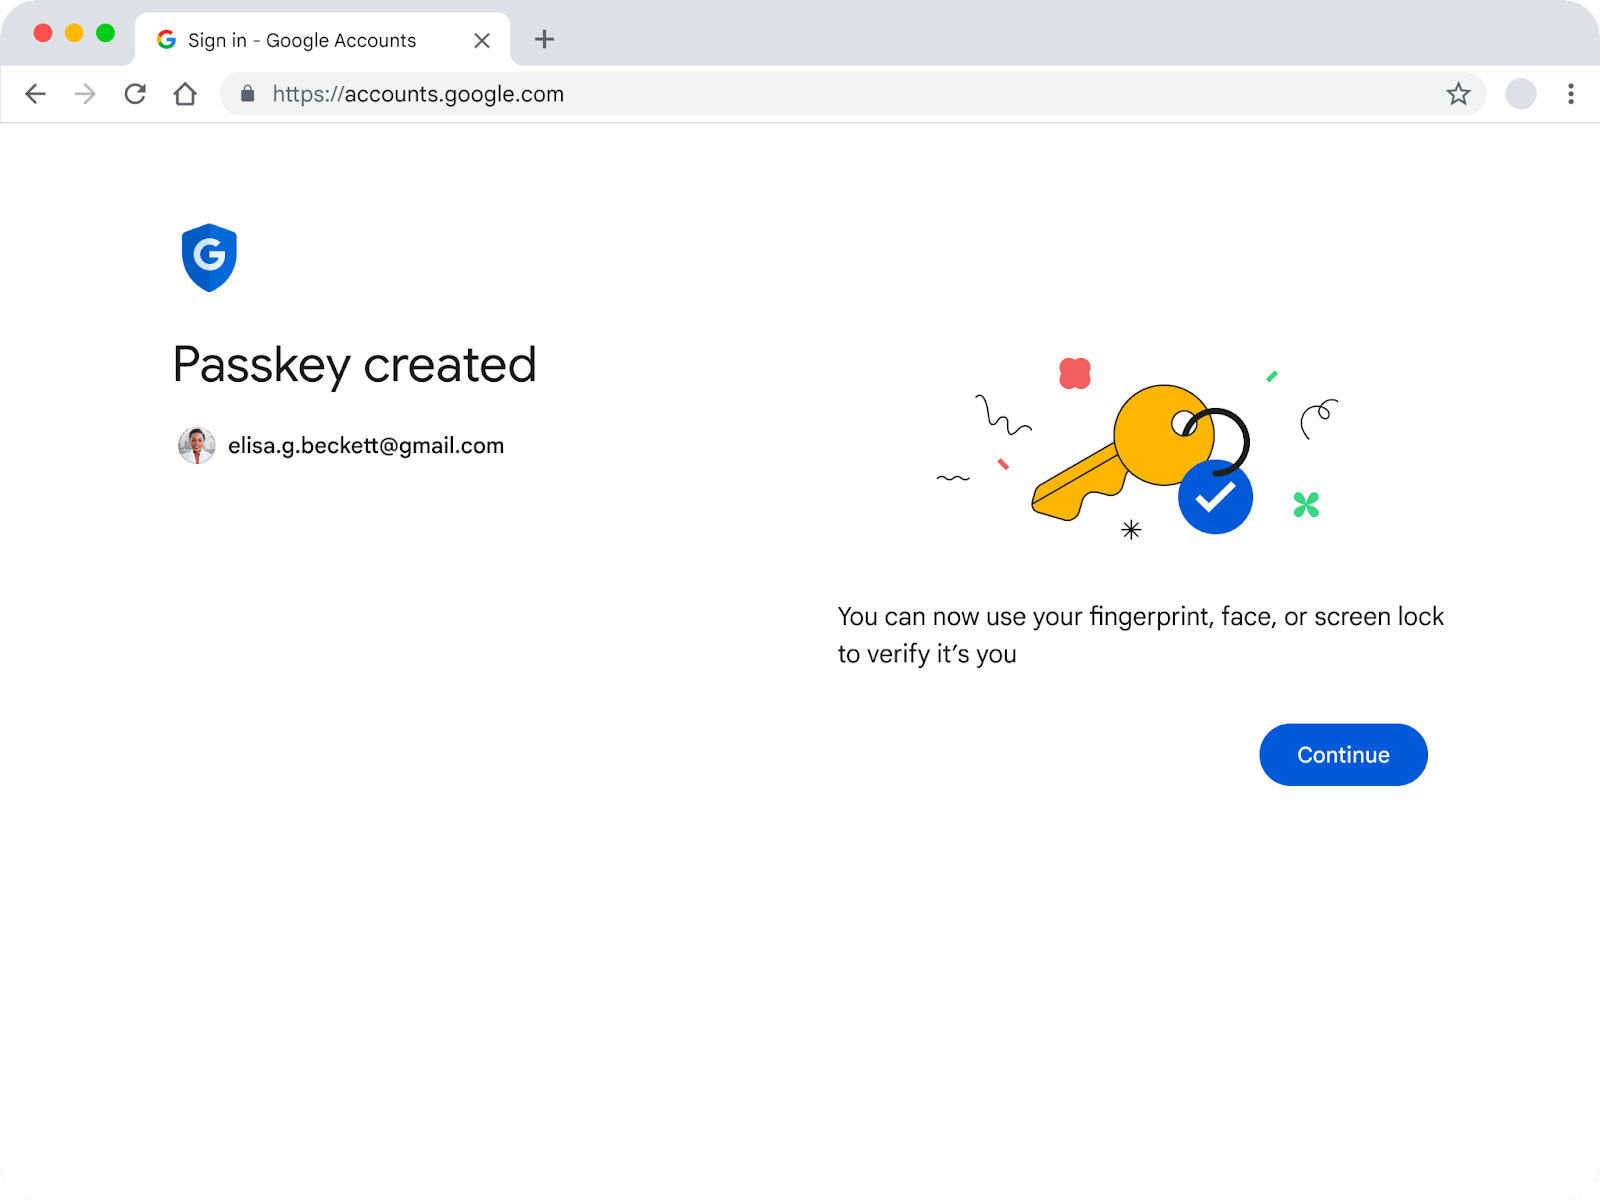 Nachdem der Passkey erstellt wurde, sehen Nutzer diese Seite